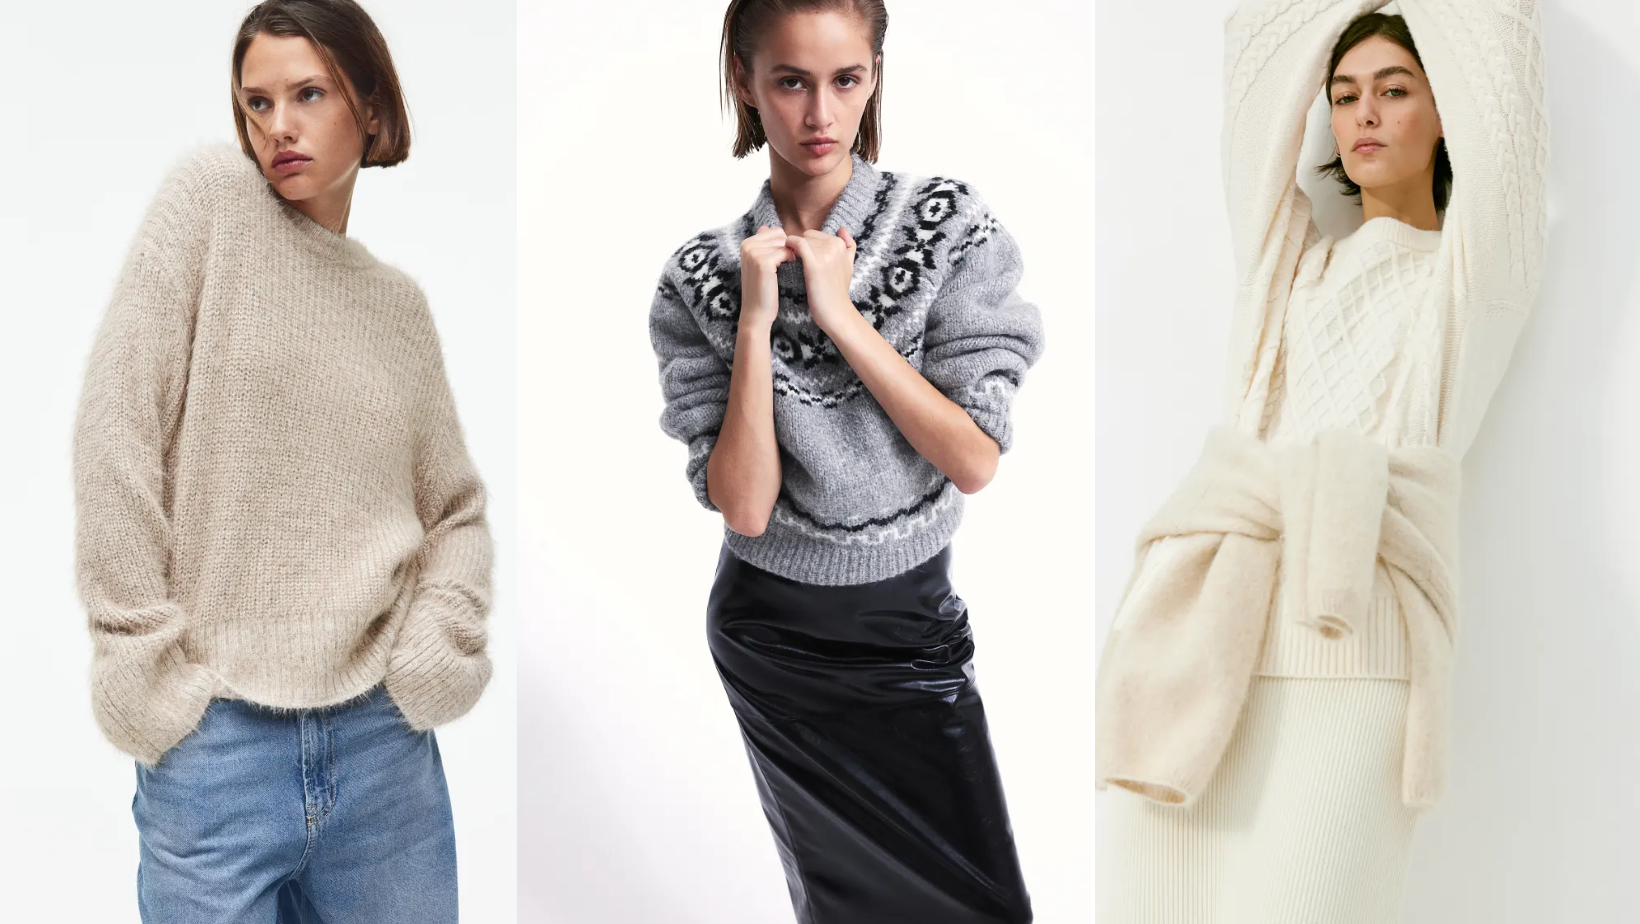 Topli džemperi najbolja su investicija za zimsko doba: Izdvojili smo najljepše komade iz popularnog dućana